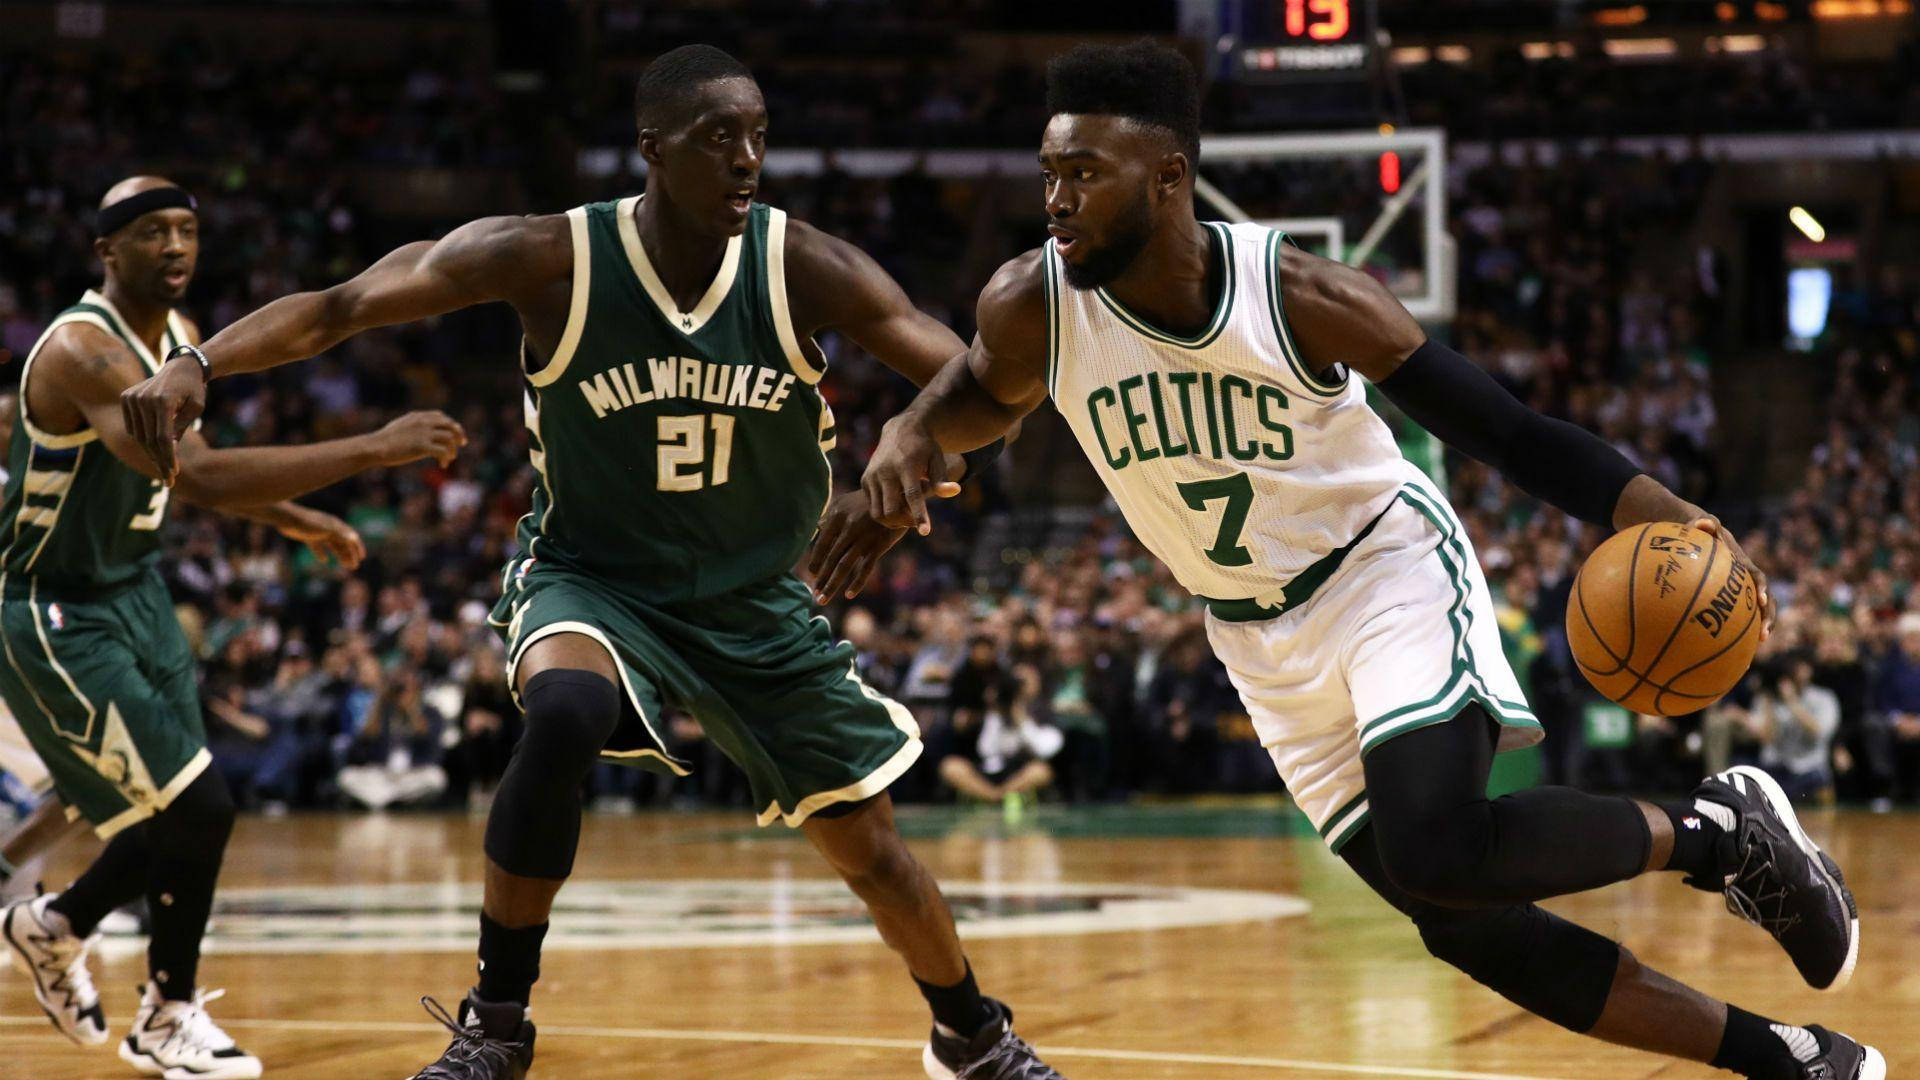 Jaylenbrown Celtics Gegen Milwaukee. Wallpaper